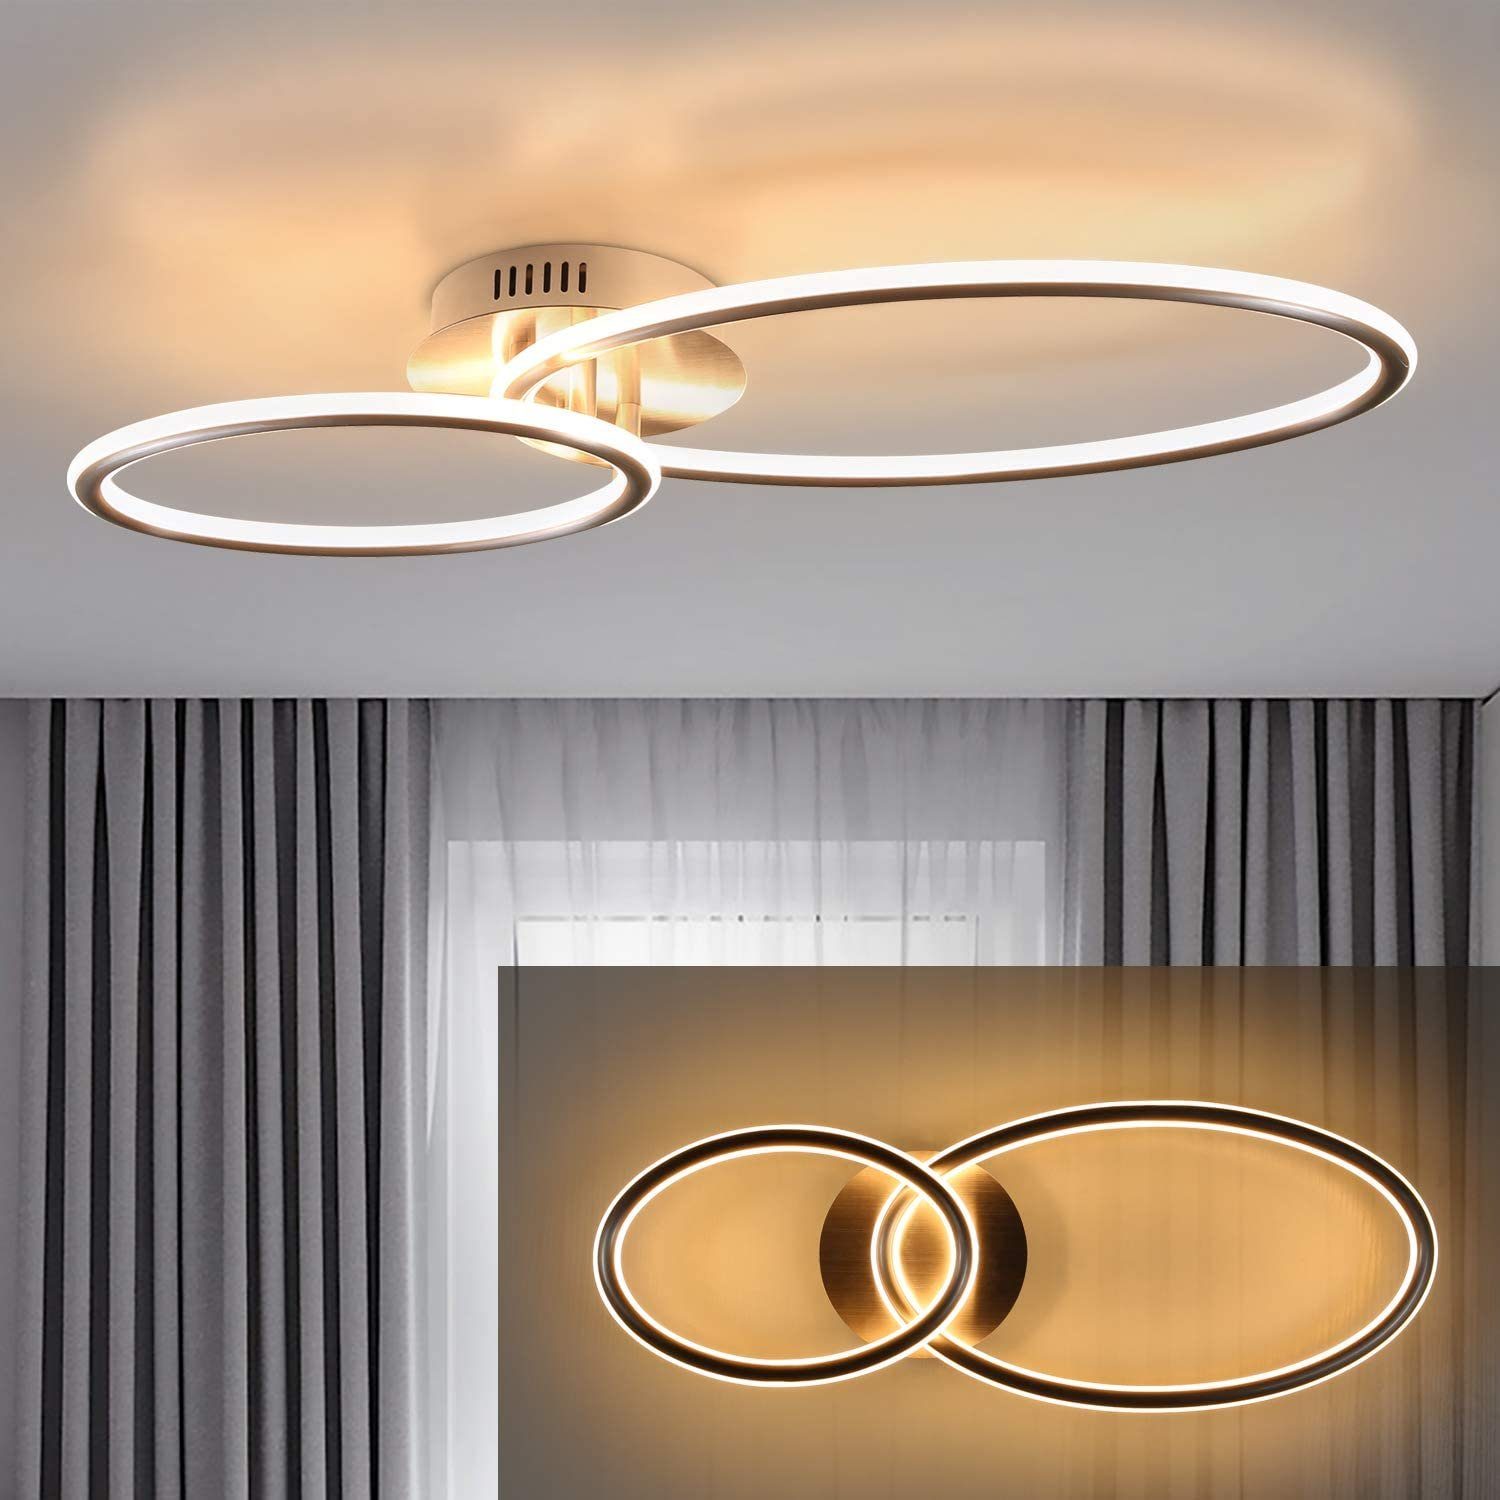 Deckenlampe LED Design Flur Strahler Küchen Decken Leuchten Wohn Zimmer Lampen 